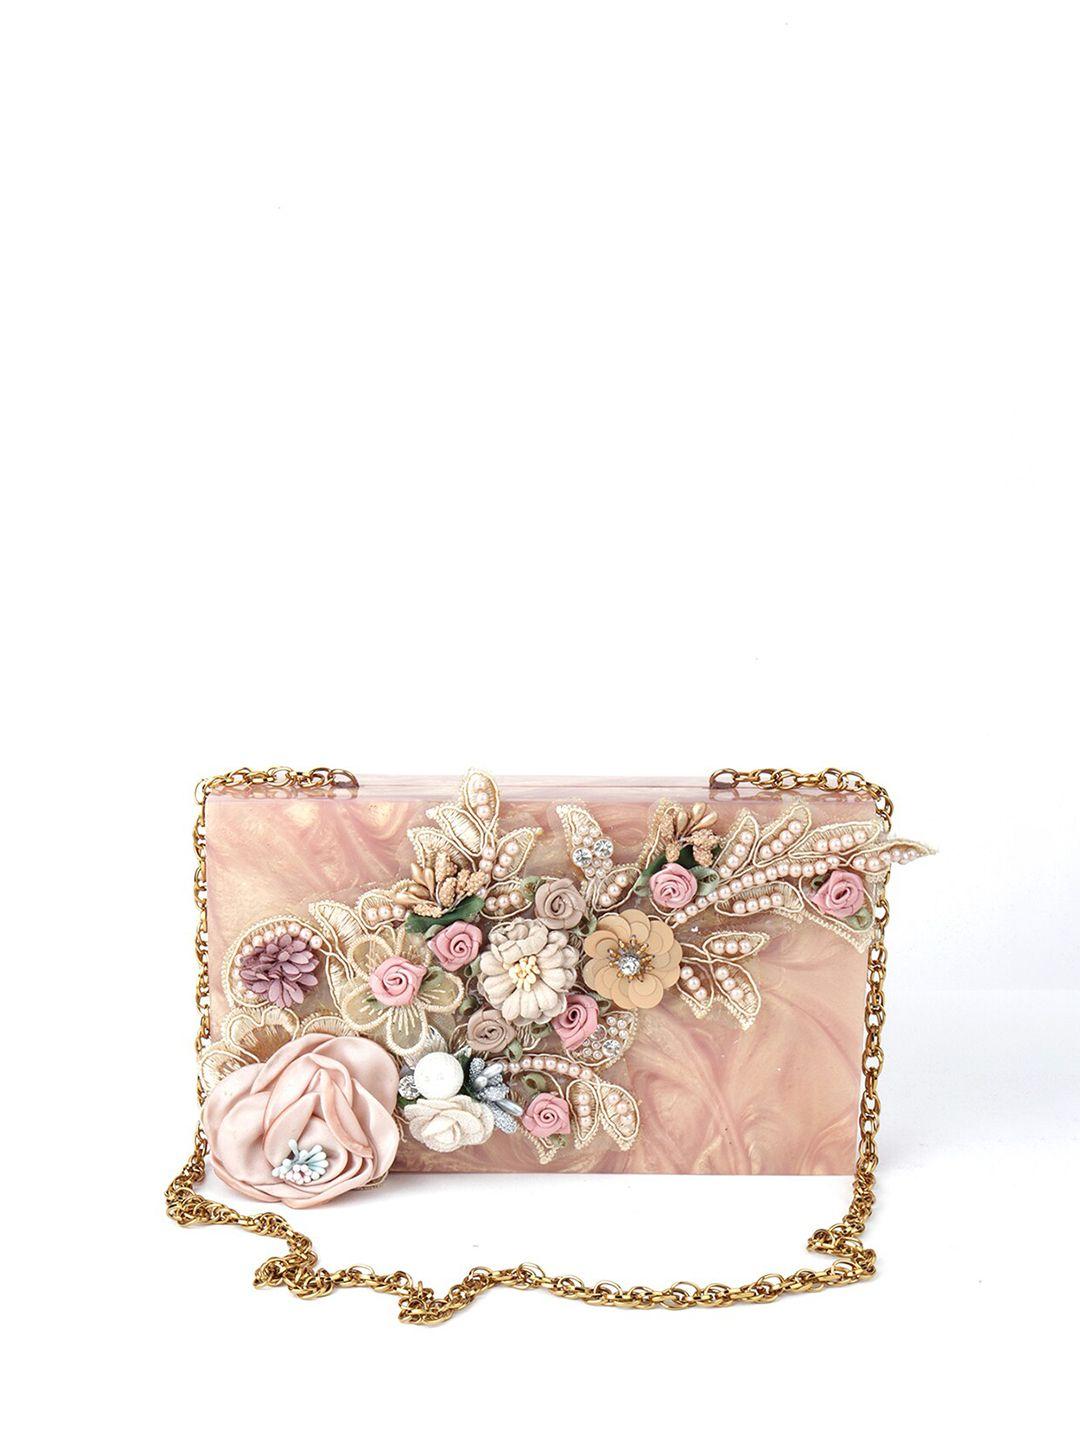 odette rose gold & pink textured embellished box clutch